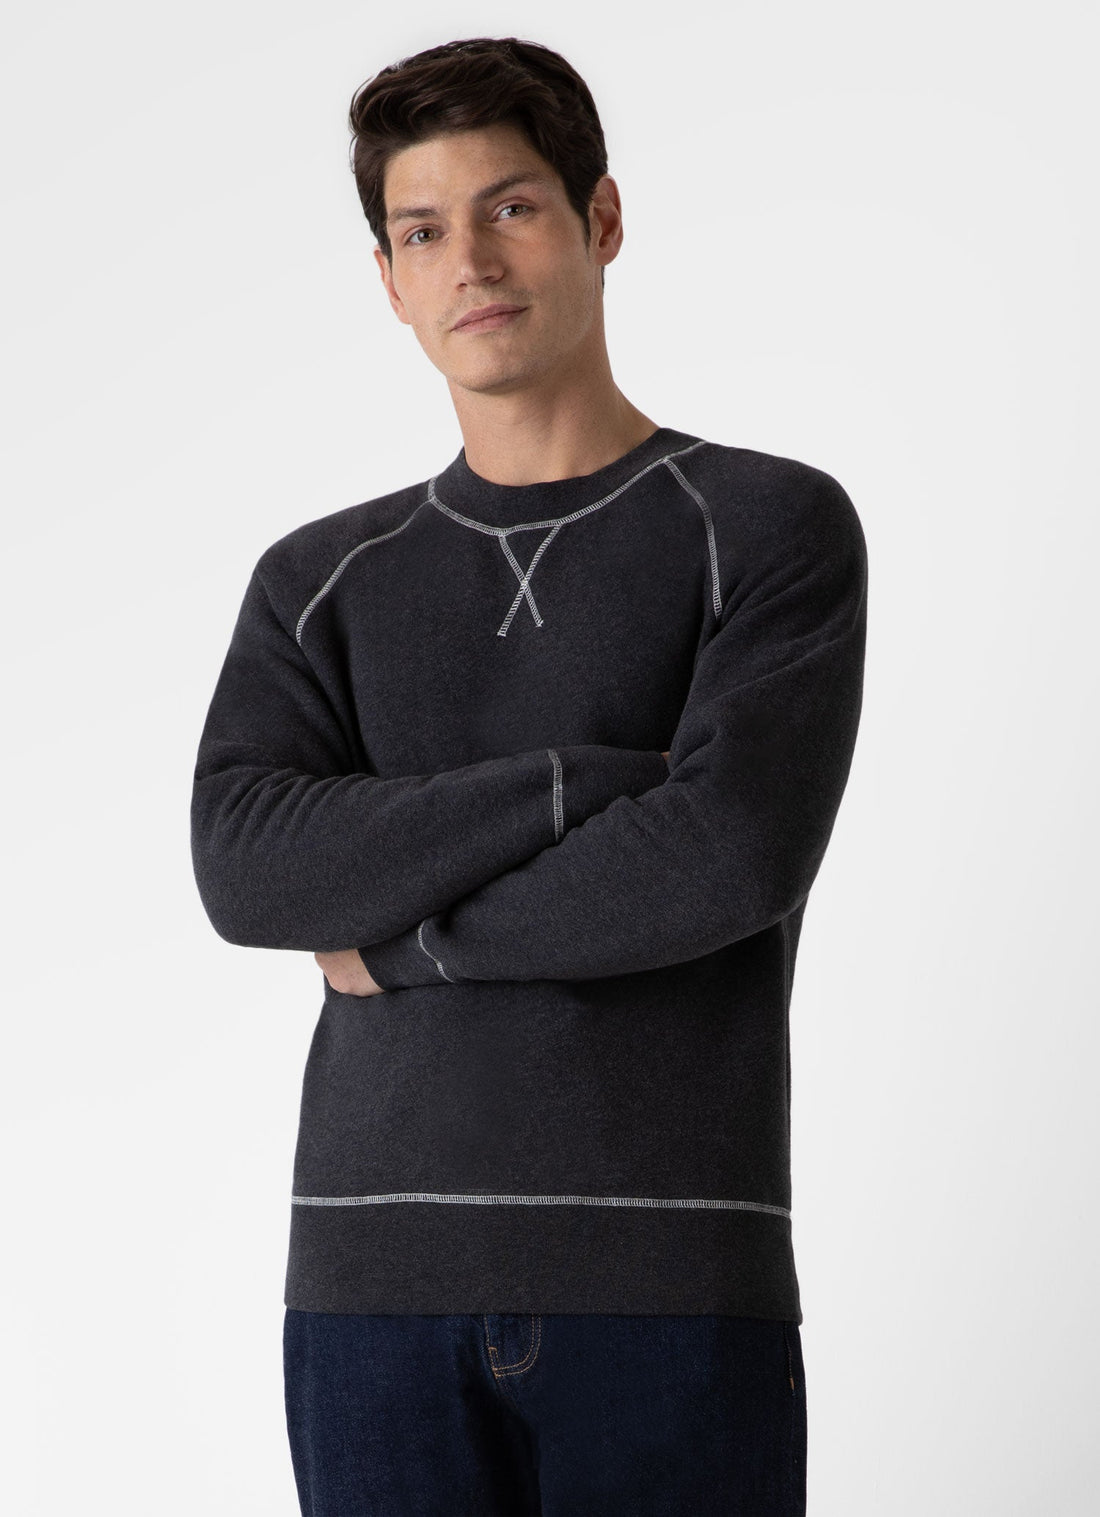 Men's Fleeceback Sweatshirt in Charcoal Melange